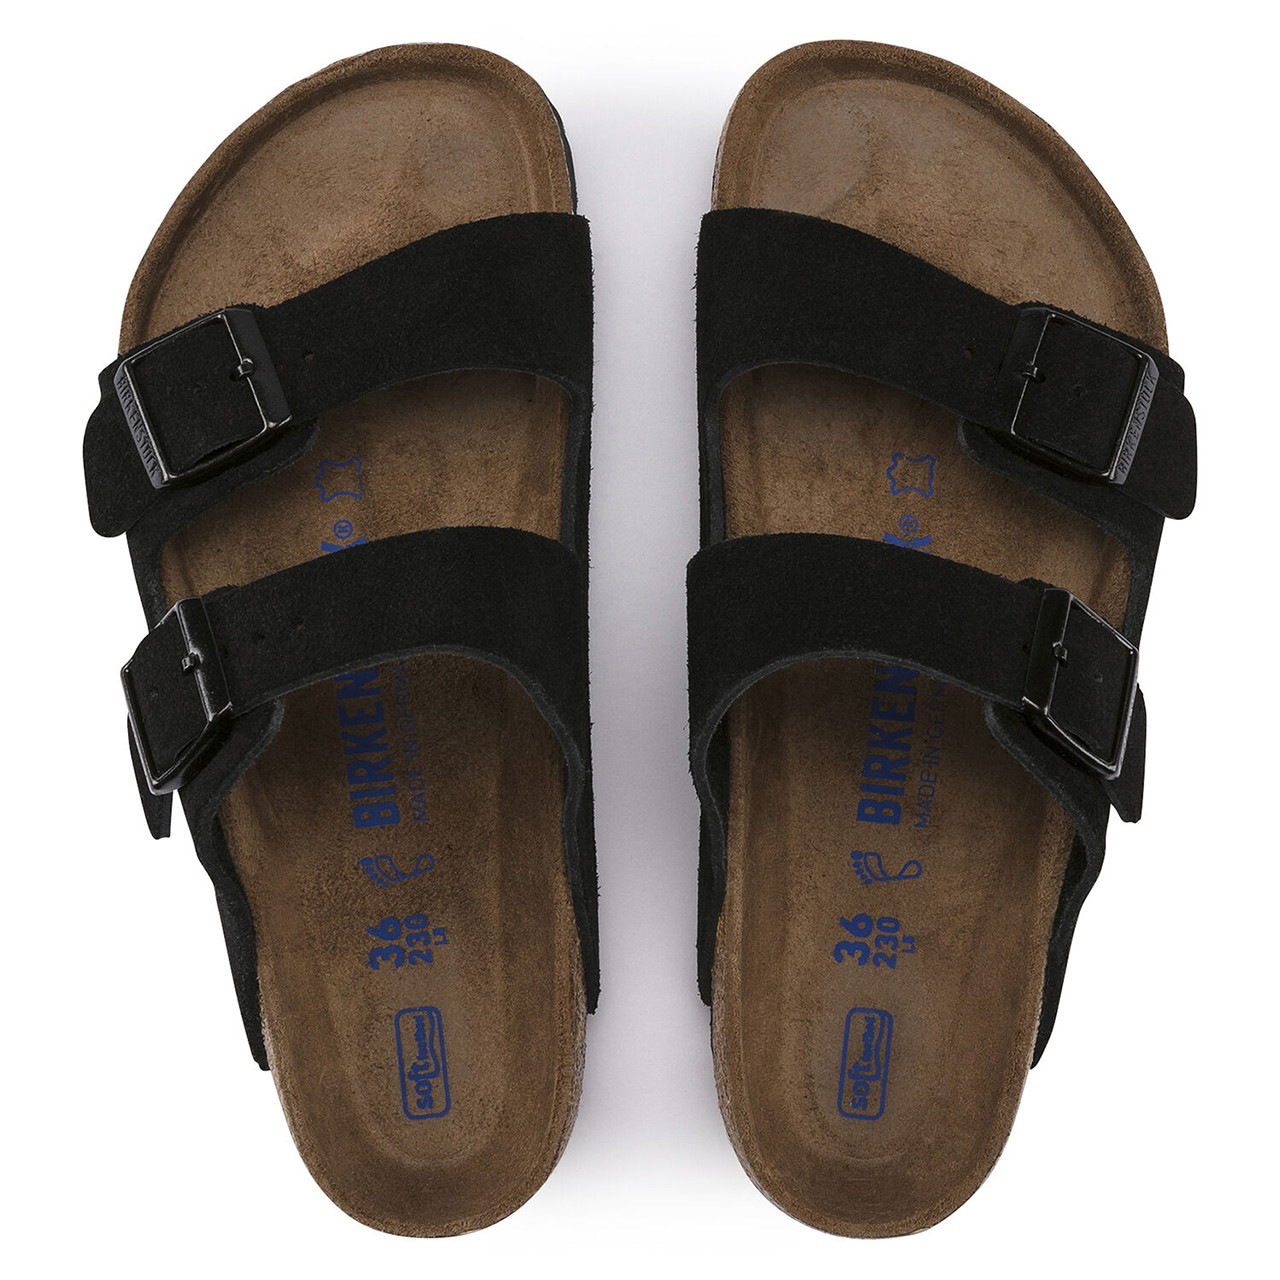 insoles for birkenstock sandals